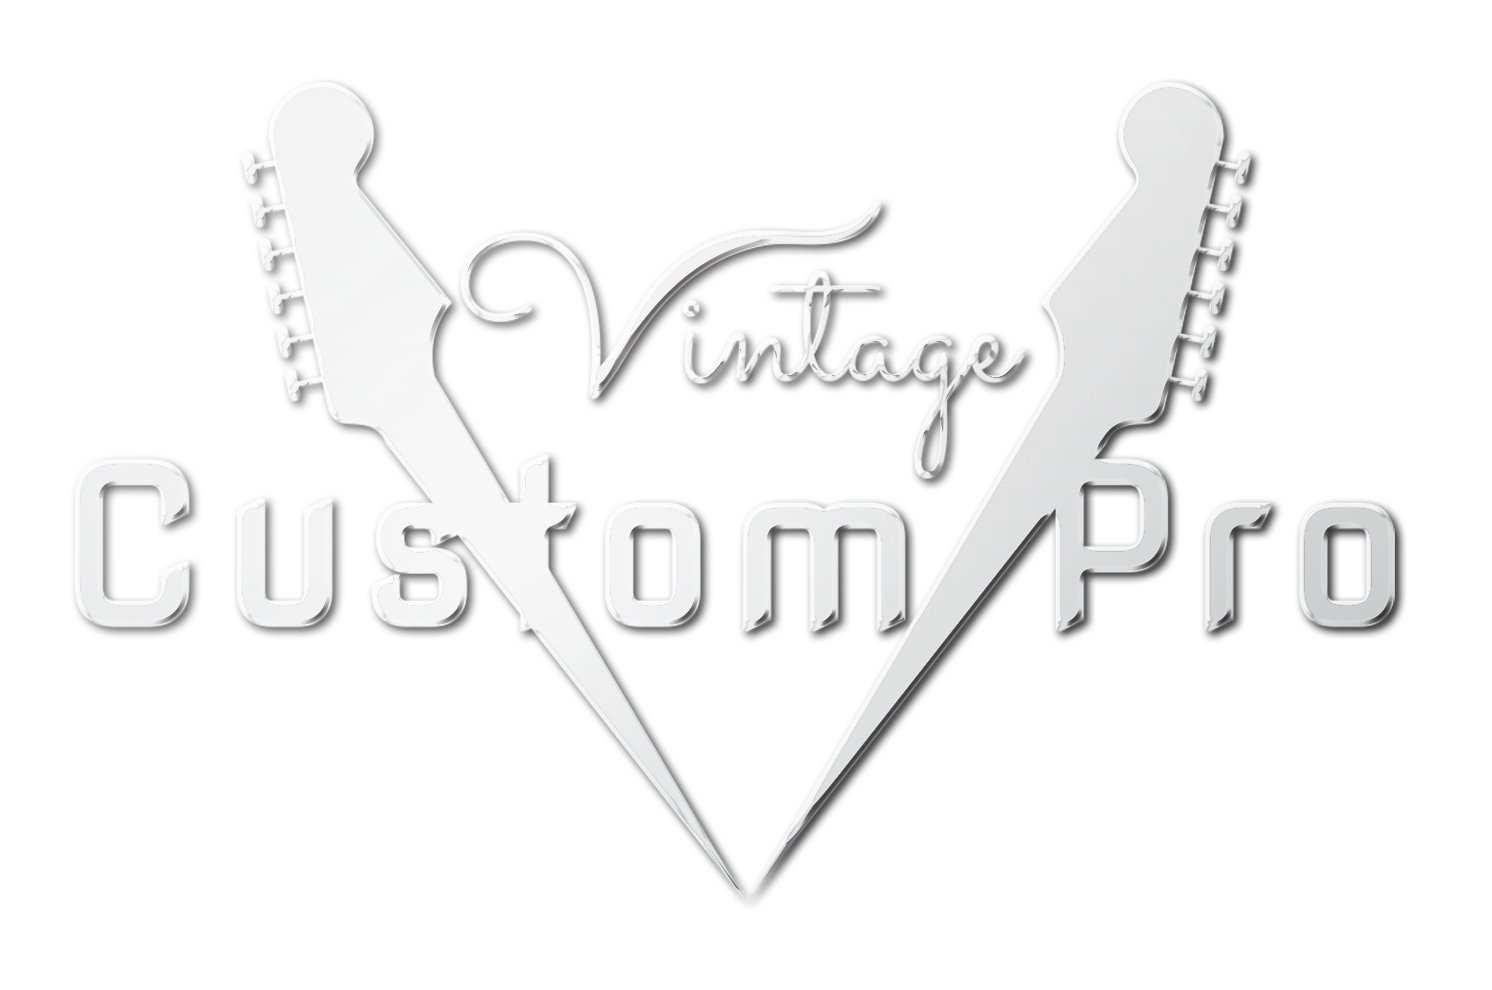 Vintage* V62MRAB Electric Guitar, Electric Guitar for sale at Richards Guitars.